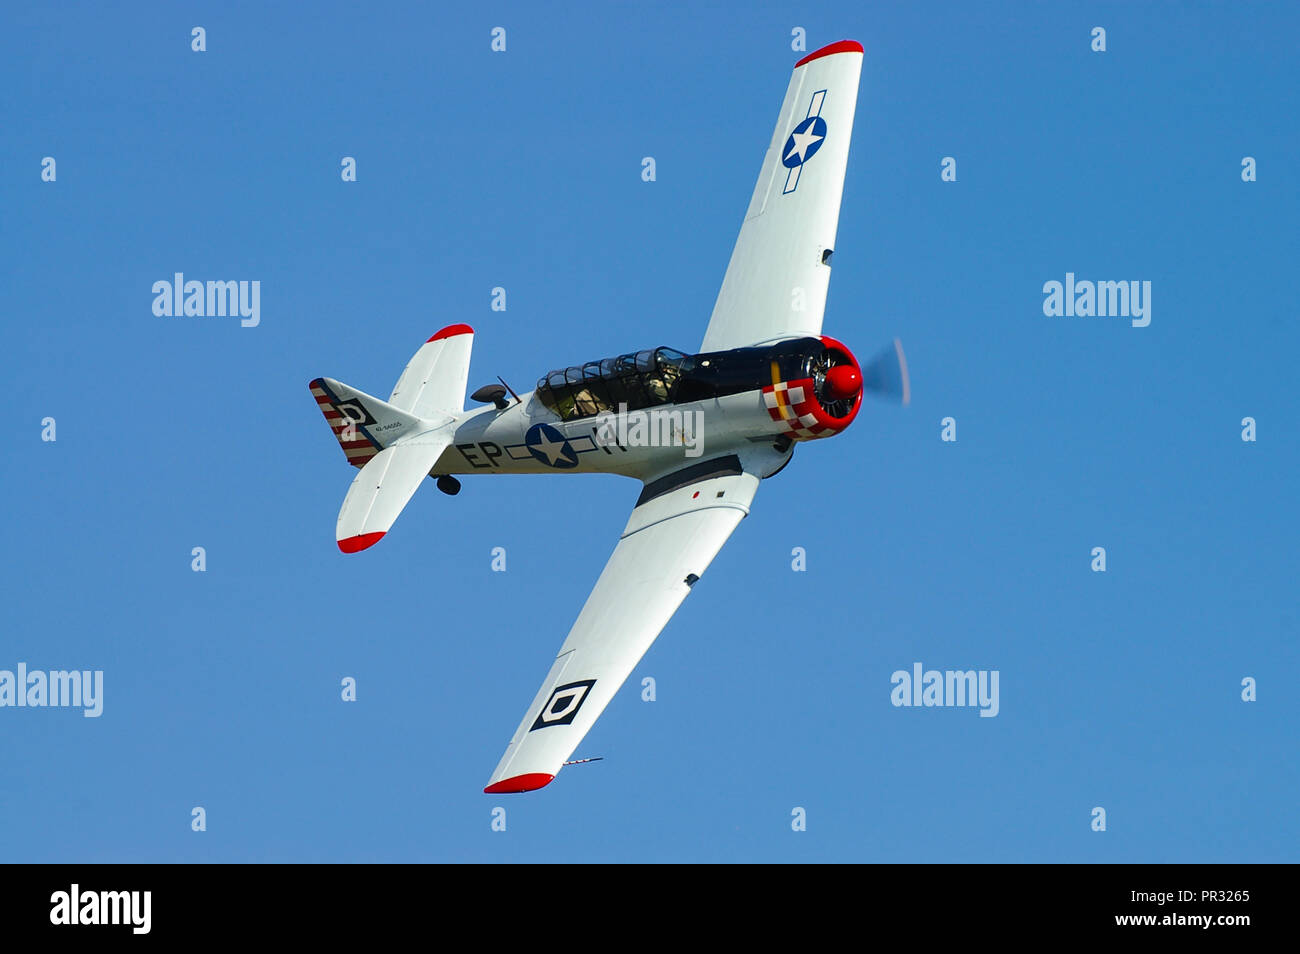 North American T-6 Harvard, Texan, propriété de Maurice Hammond volant dans un ciel bleu lors d'un spectacle aérien Banque D'Images